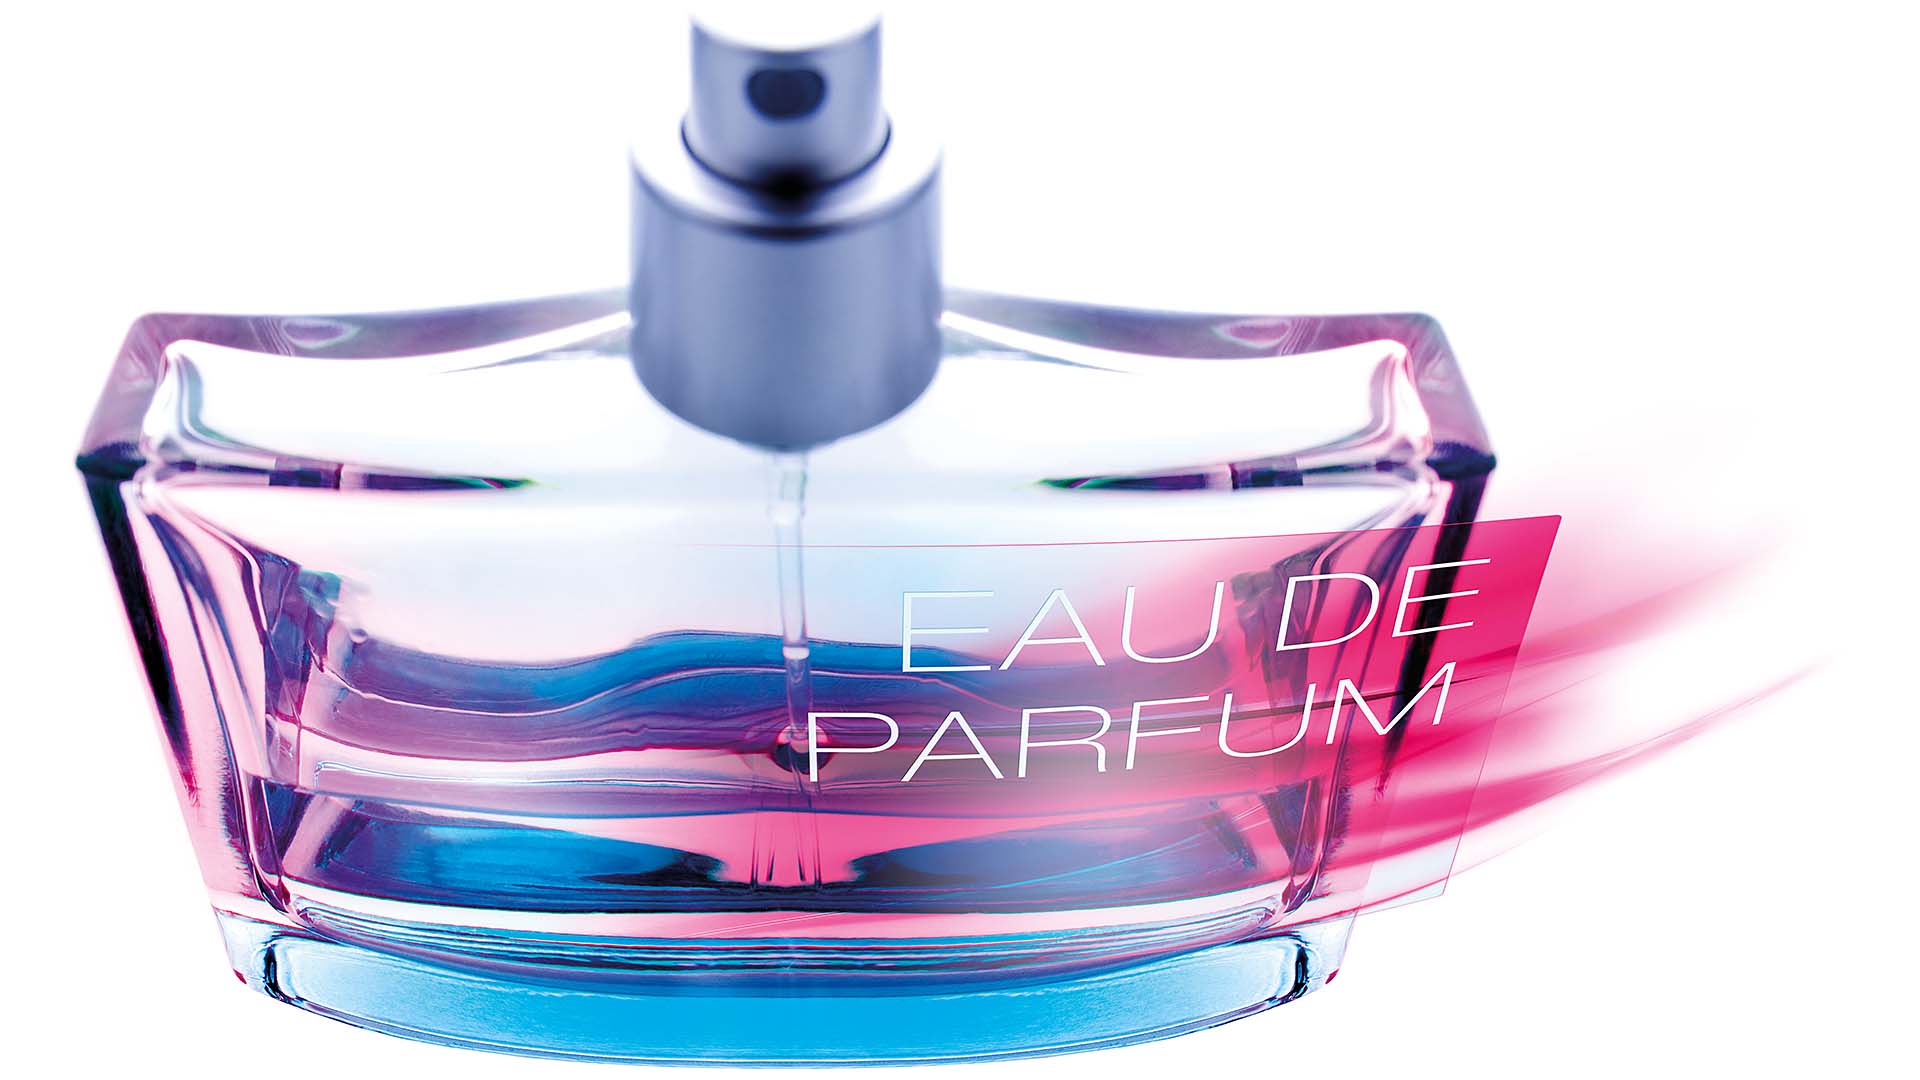 upm-raflatac-renewable-raw-material-for-perfume-bottle-labels.jpg